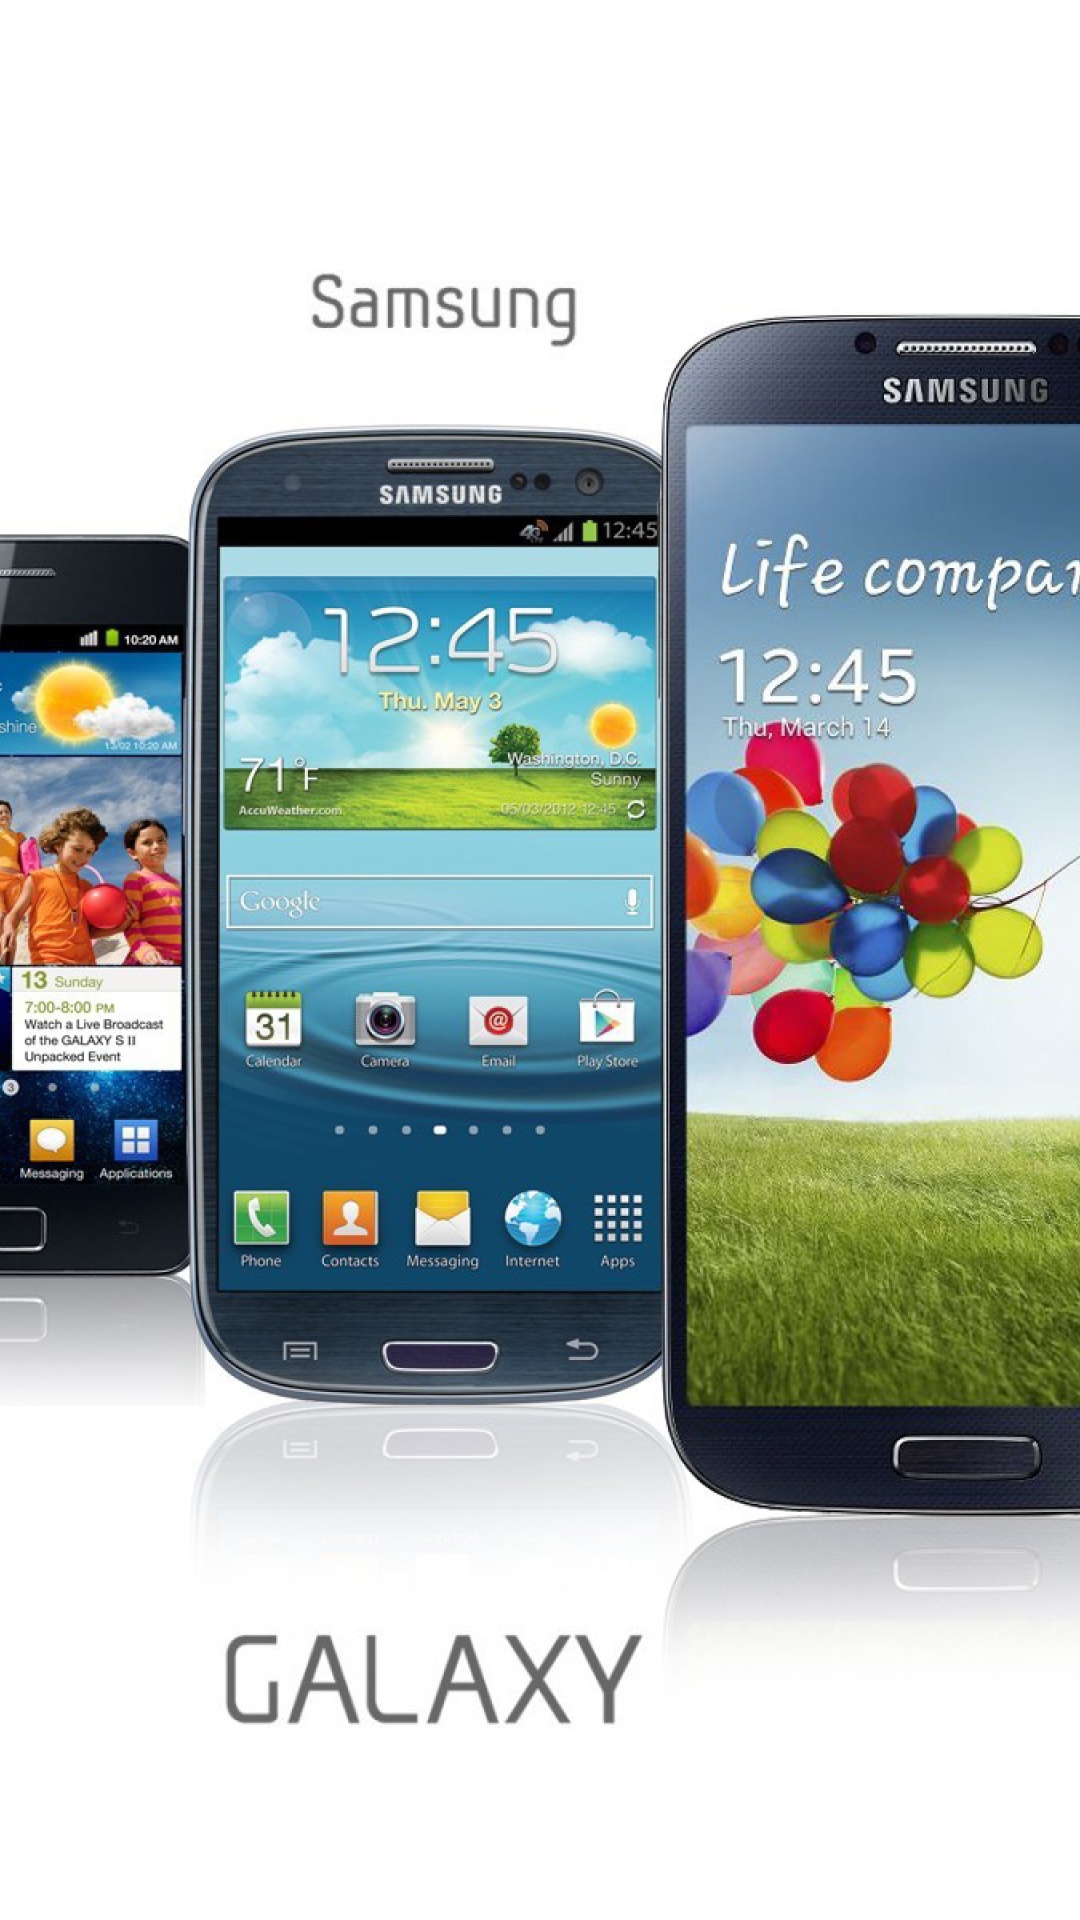 Samsung Smartphones S1, S2, S3, S4 screenshot #1 1080x1920